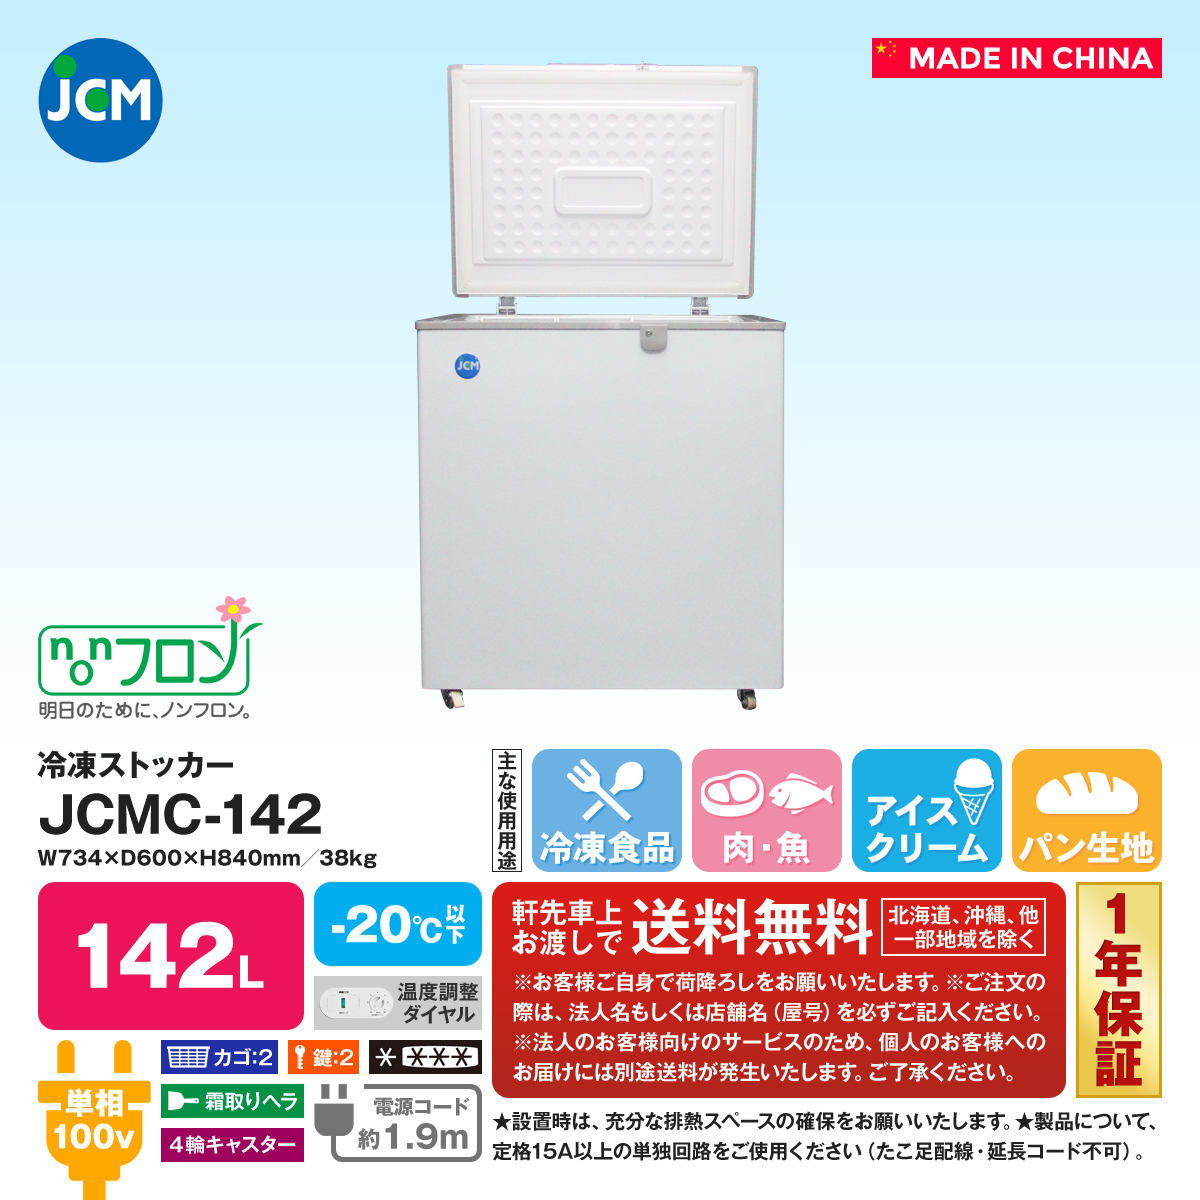 2周年記念イベントが 業務用 JCM JCMC-310 冷凍庫ストッカー 冷凍庫 産業用冷凍庫 冷凍食品 小型冷凍庫 キャスター付 鍵付 新品 